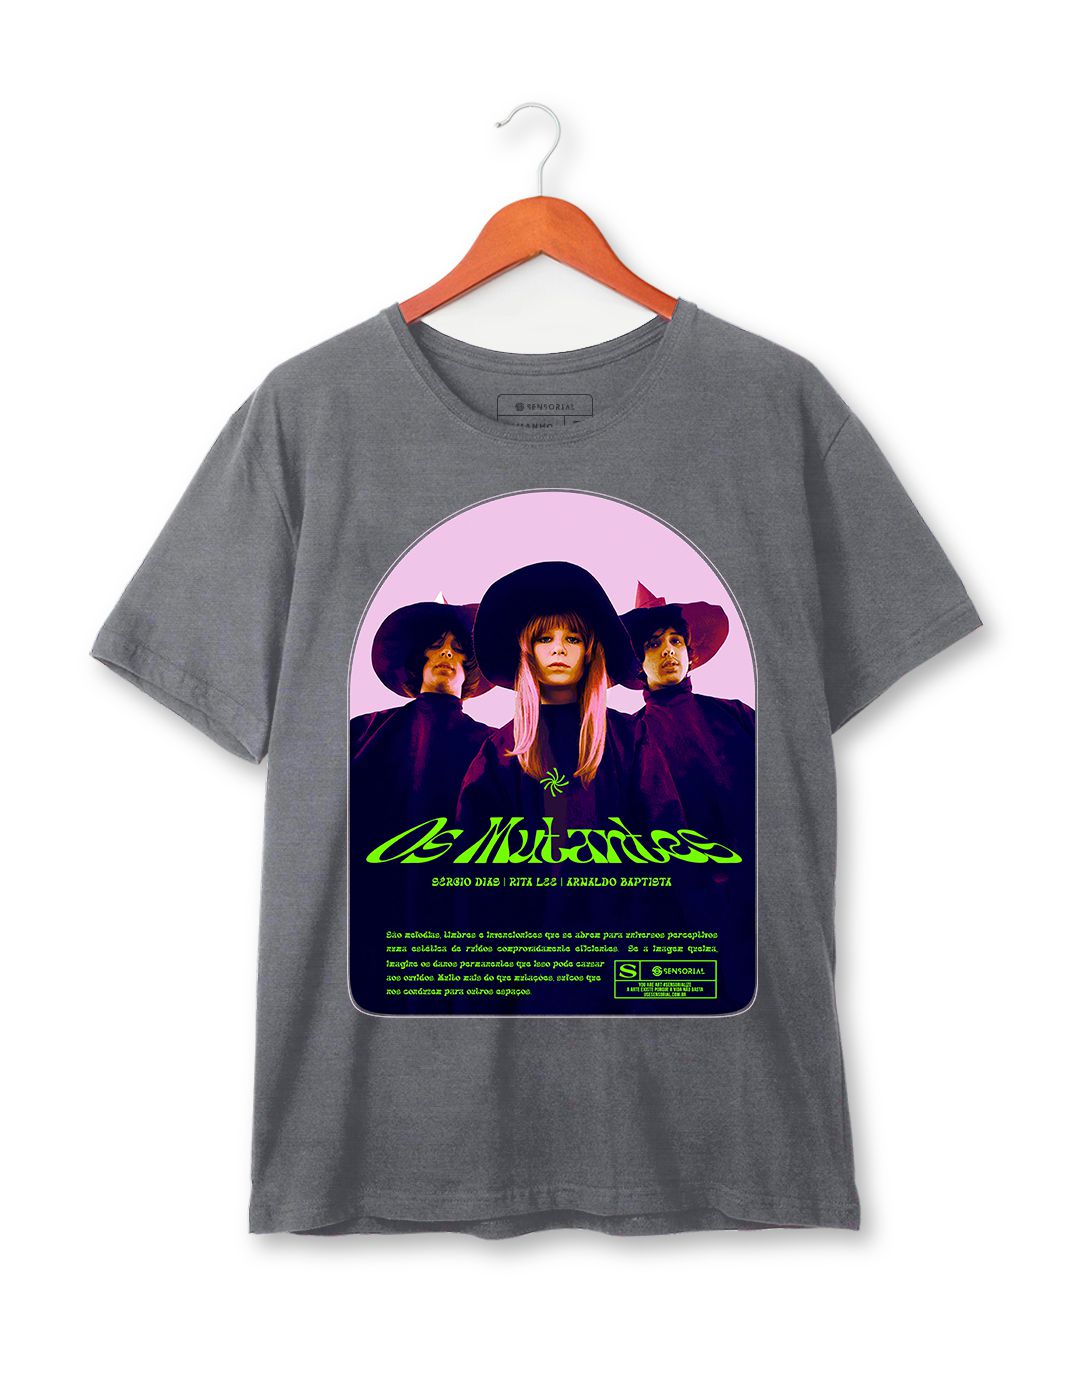 Camiseta Os Mutantes Estonada - Sensorial, camisetas exclusivas, compre  online